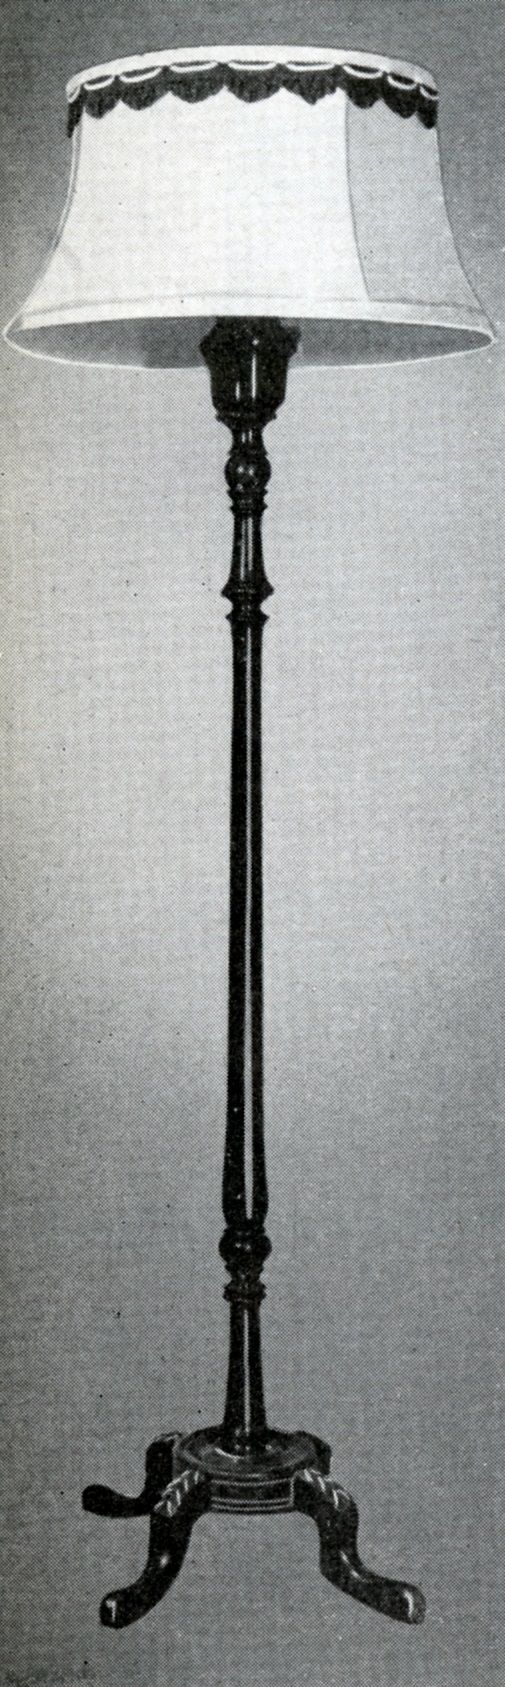 Lampe à pied munie d’un abat-jour décoratif, d’un pied fabriqué au tour, et d’une base composée de quatre pattes ornées.